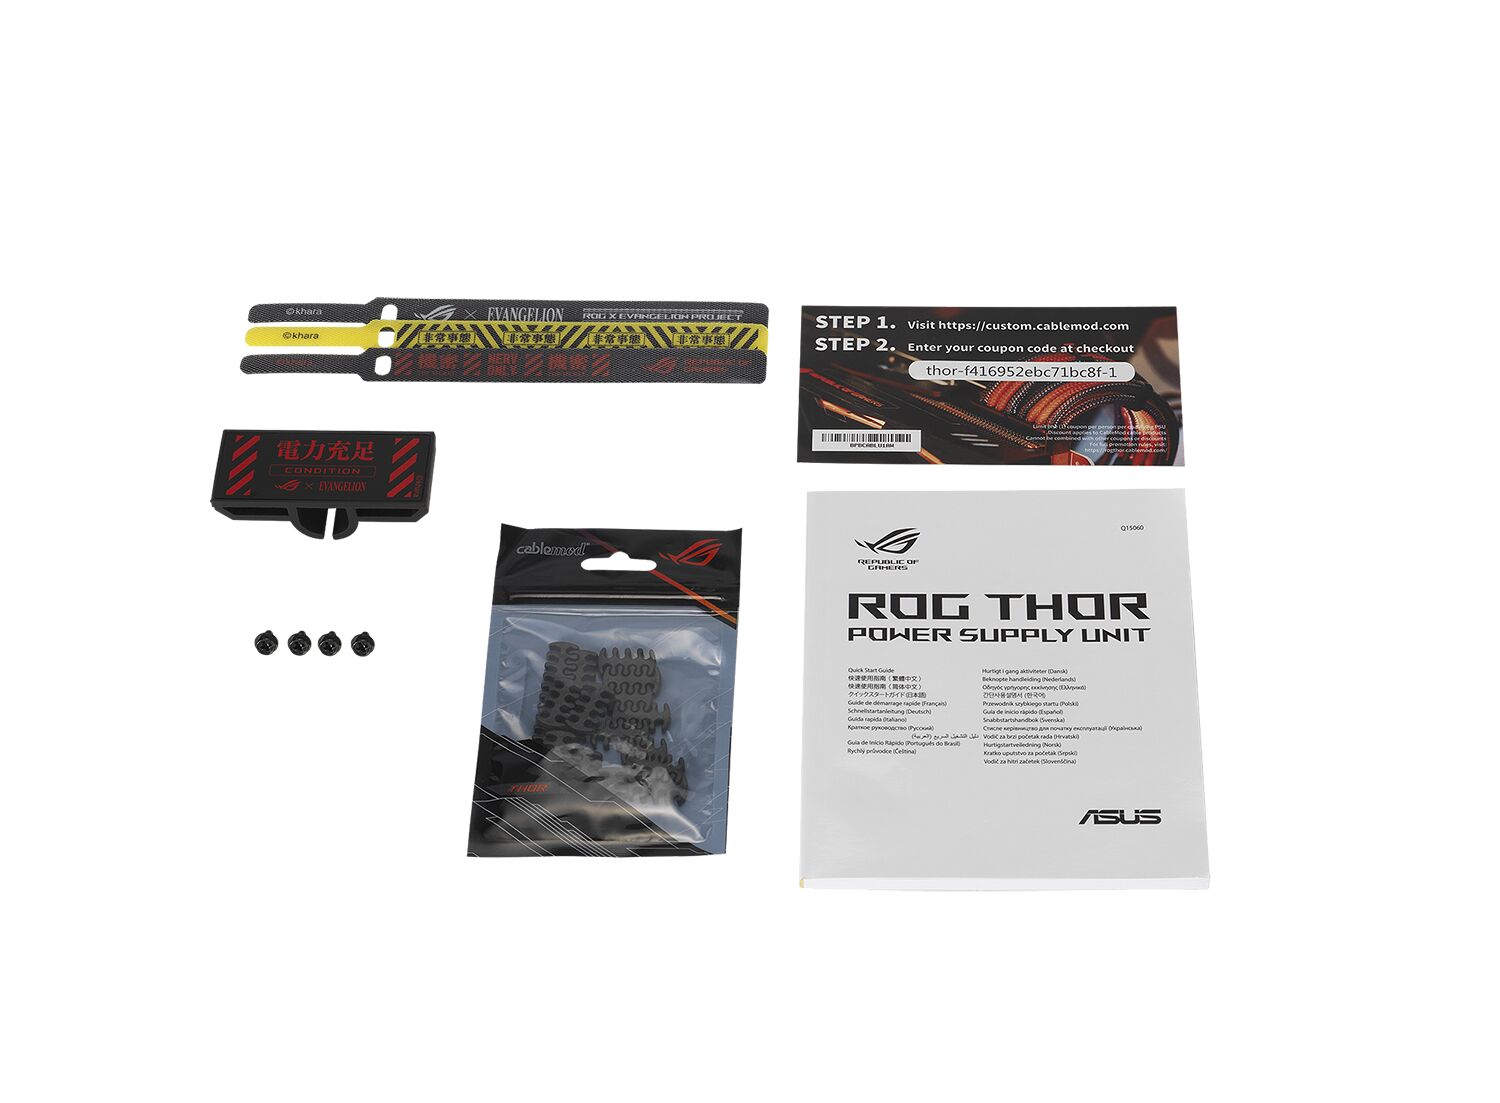 Asus ROG Thor Platinum II EVA Edition - 1000W (image:1)